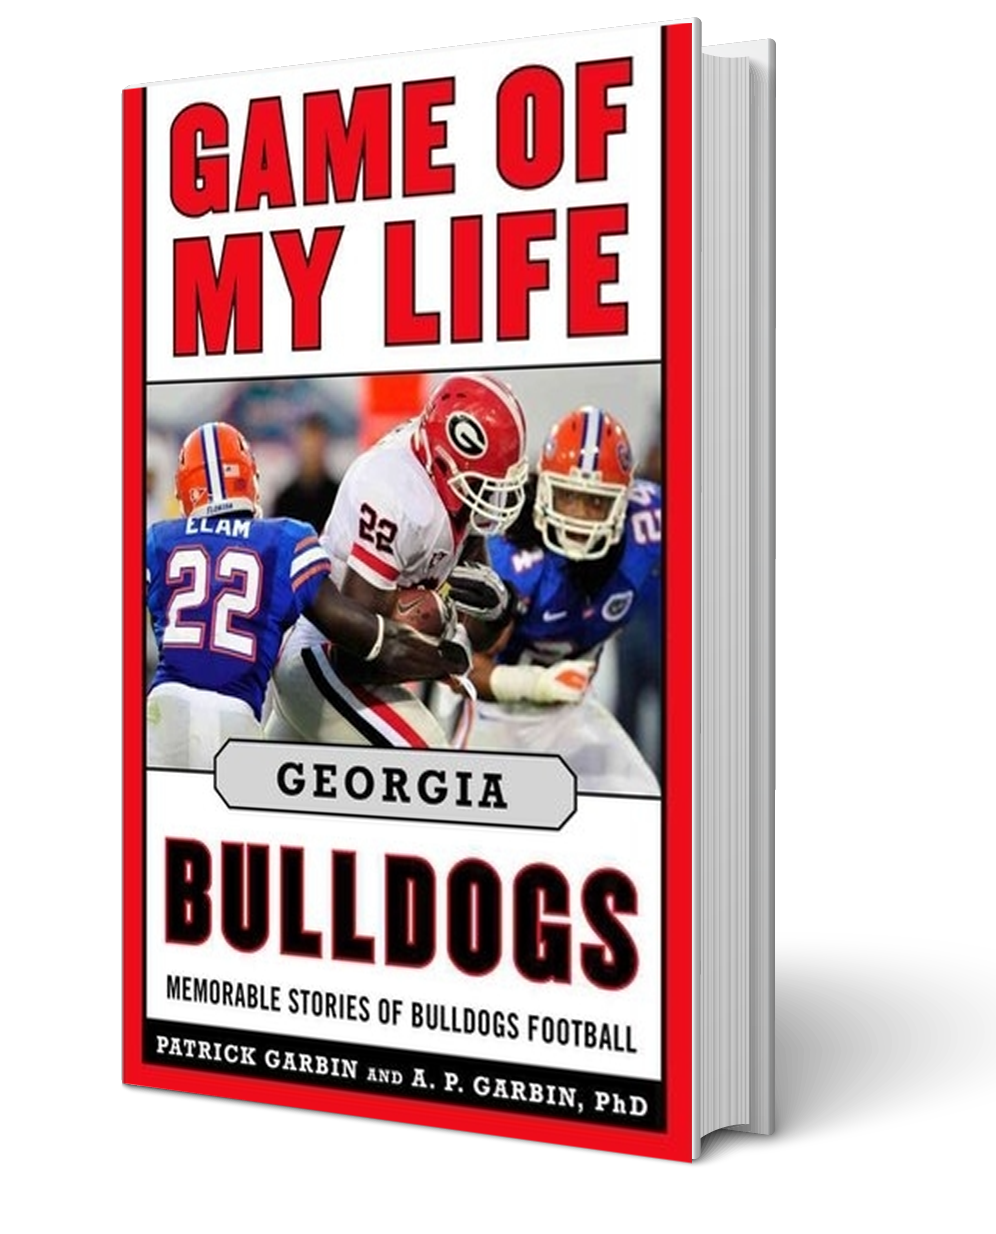 GAME OF MY LIFE Georgia Bulldogs